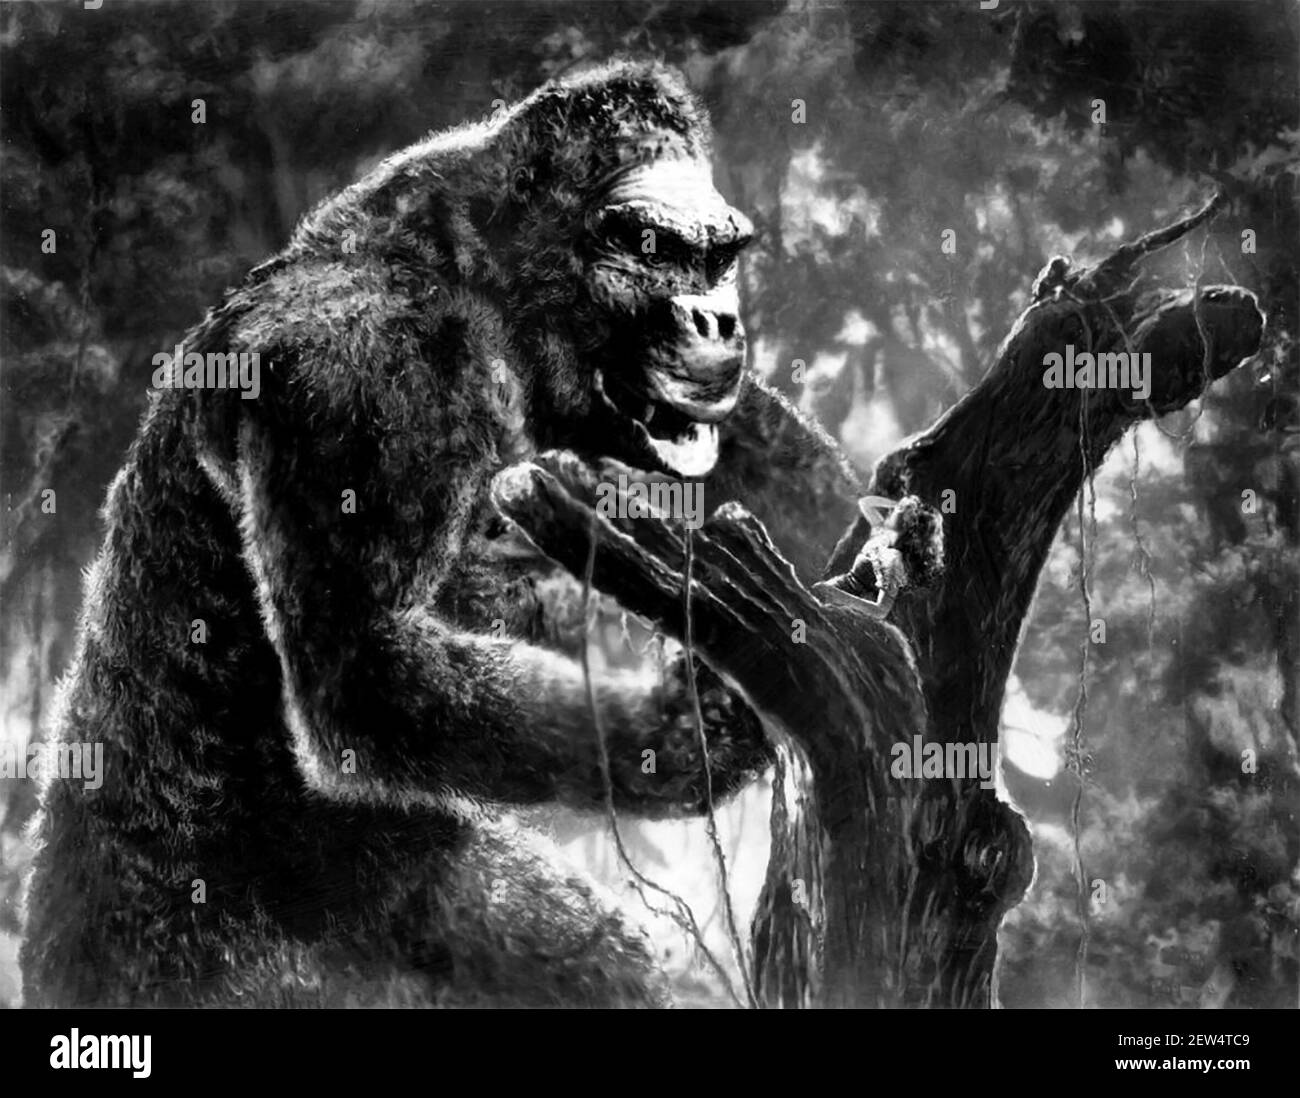 Publizistes Foto für den Film 'King Kong' von 1933, der Fay Wray mit dem riesigen Affen zeigt Stockfoto